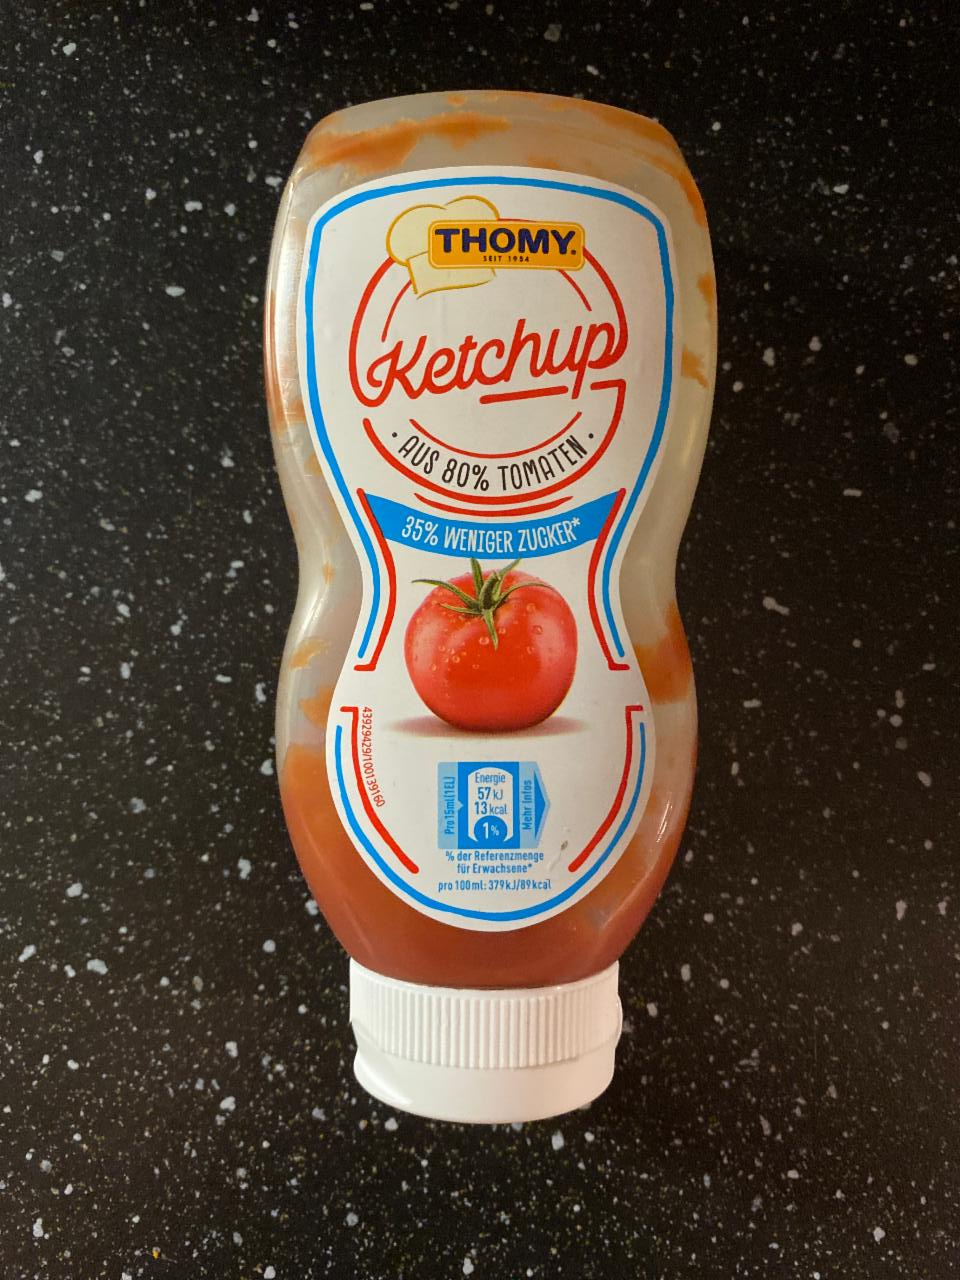 Fotografie - Ketchup aus 80% Tomaten 35% Weniger Zucker Thomy